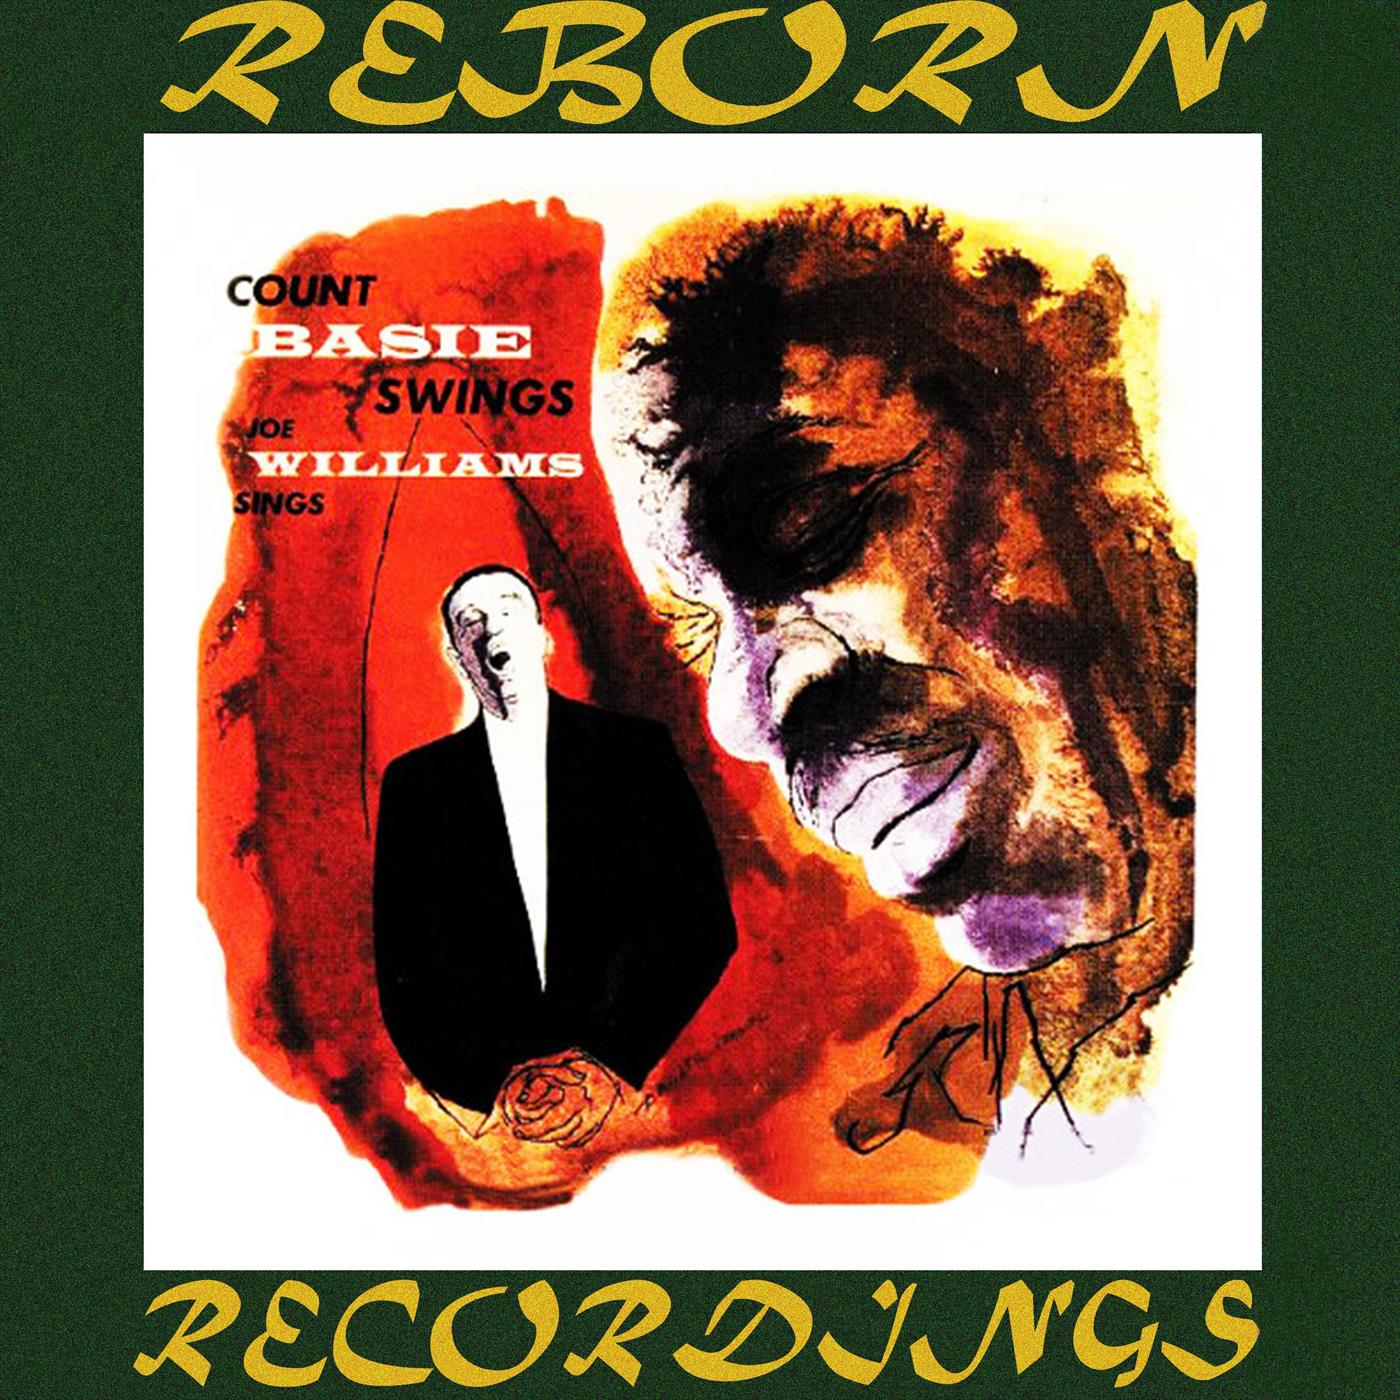 Count Basie Swings, Joe Williams Sing (HD Remastered)